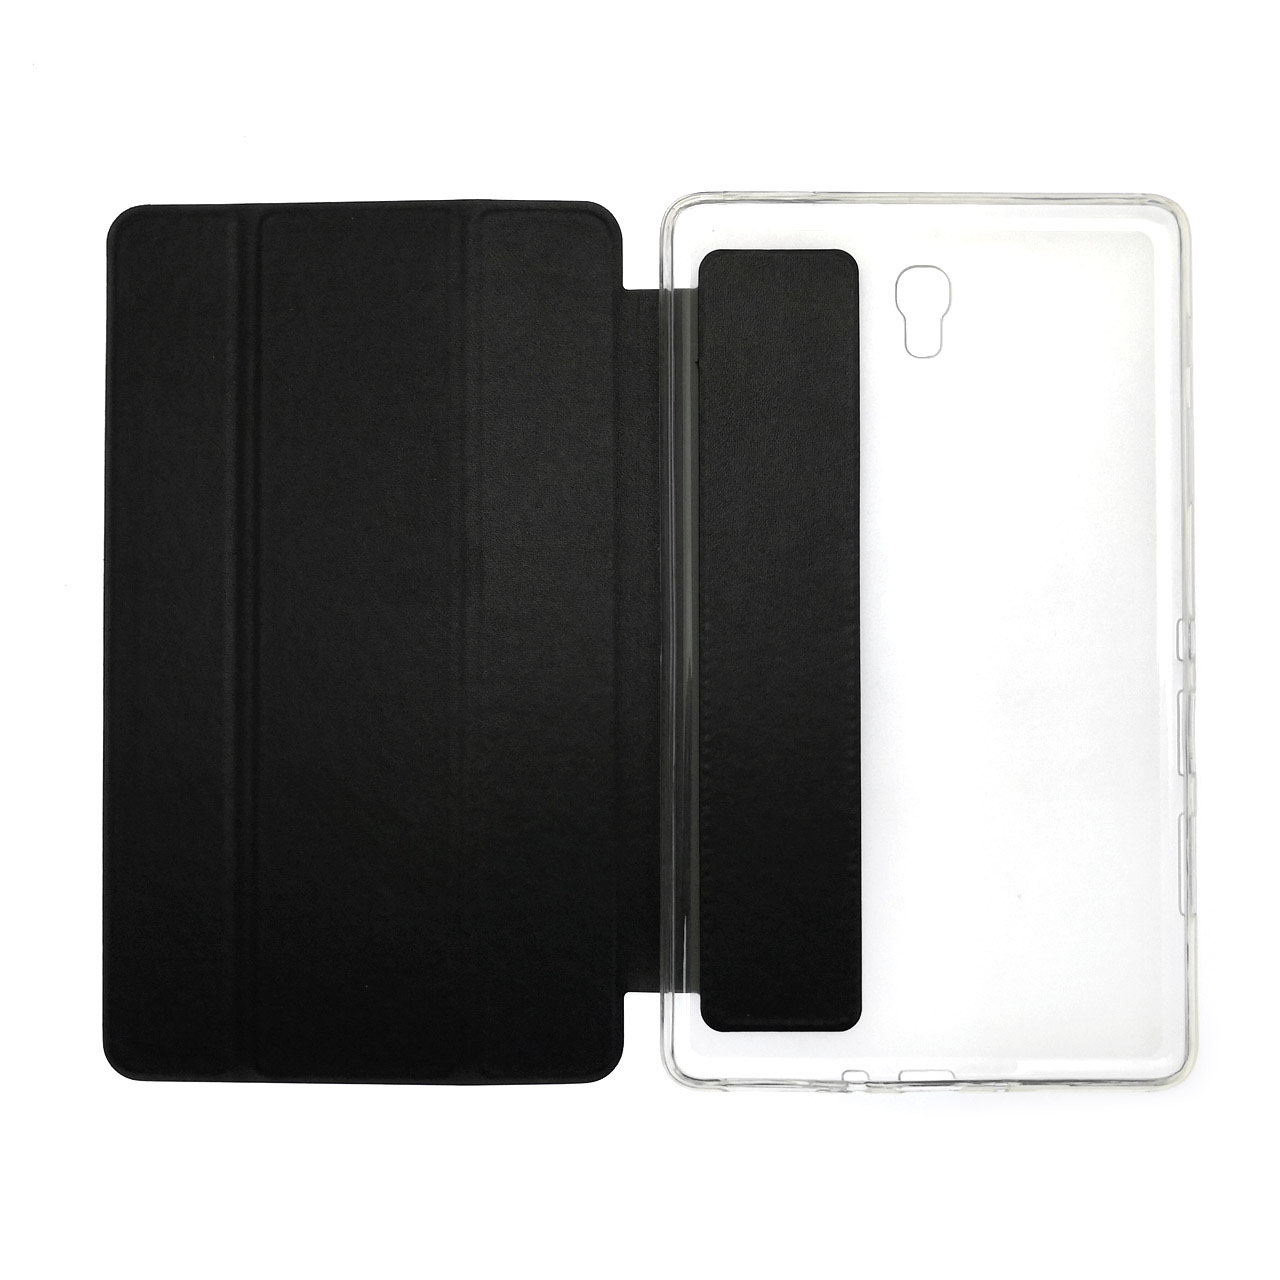 Чехол книжка Smart Case для SAMSUNG Galaxy Tab S 8.4 (SM-T700), экокожа, цвет черный